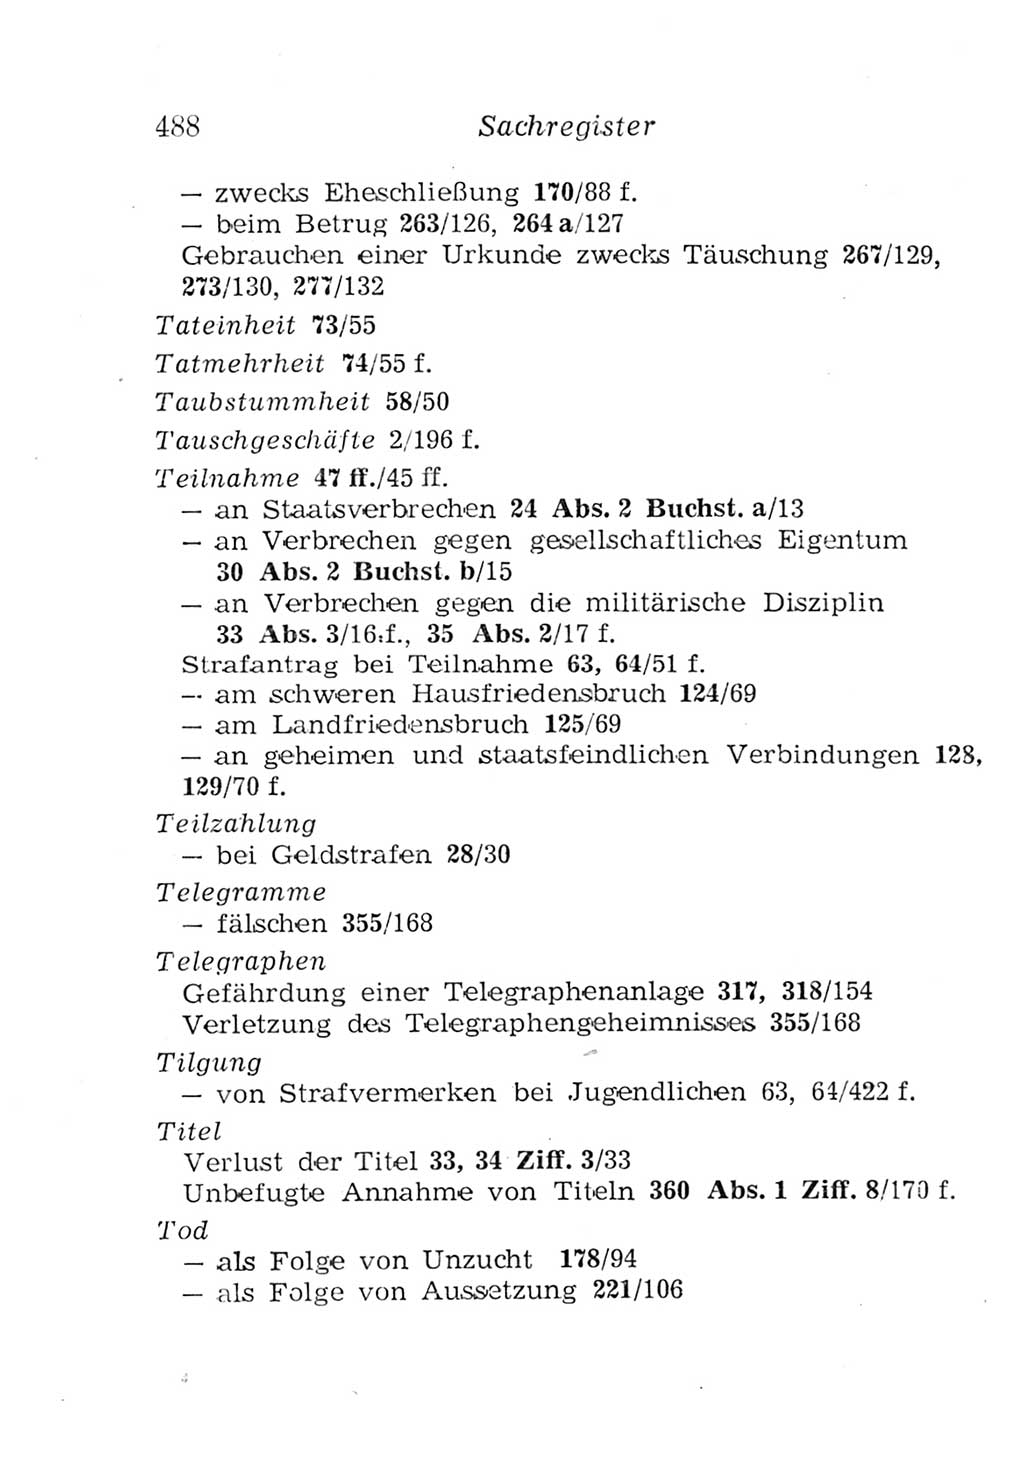 Strafgesetzbuch (StGB) und andere Strafgesetze [Deutsche Demokratische Republik (DDR)] 1957, Seite 488 (StGB Strafges. DDR 1957, S. 488)